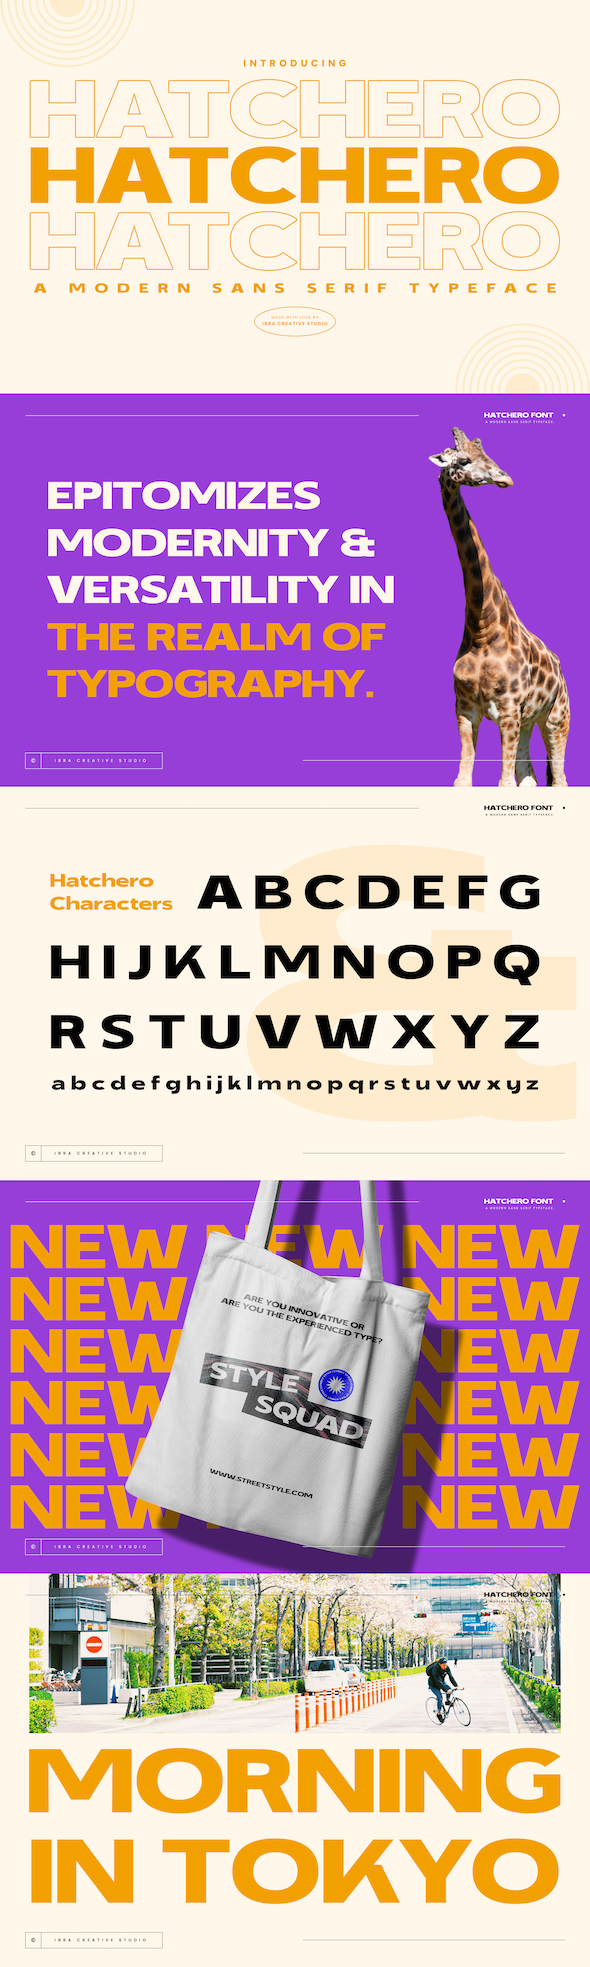 Hatchero - A Modern Sans Serif Typeface